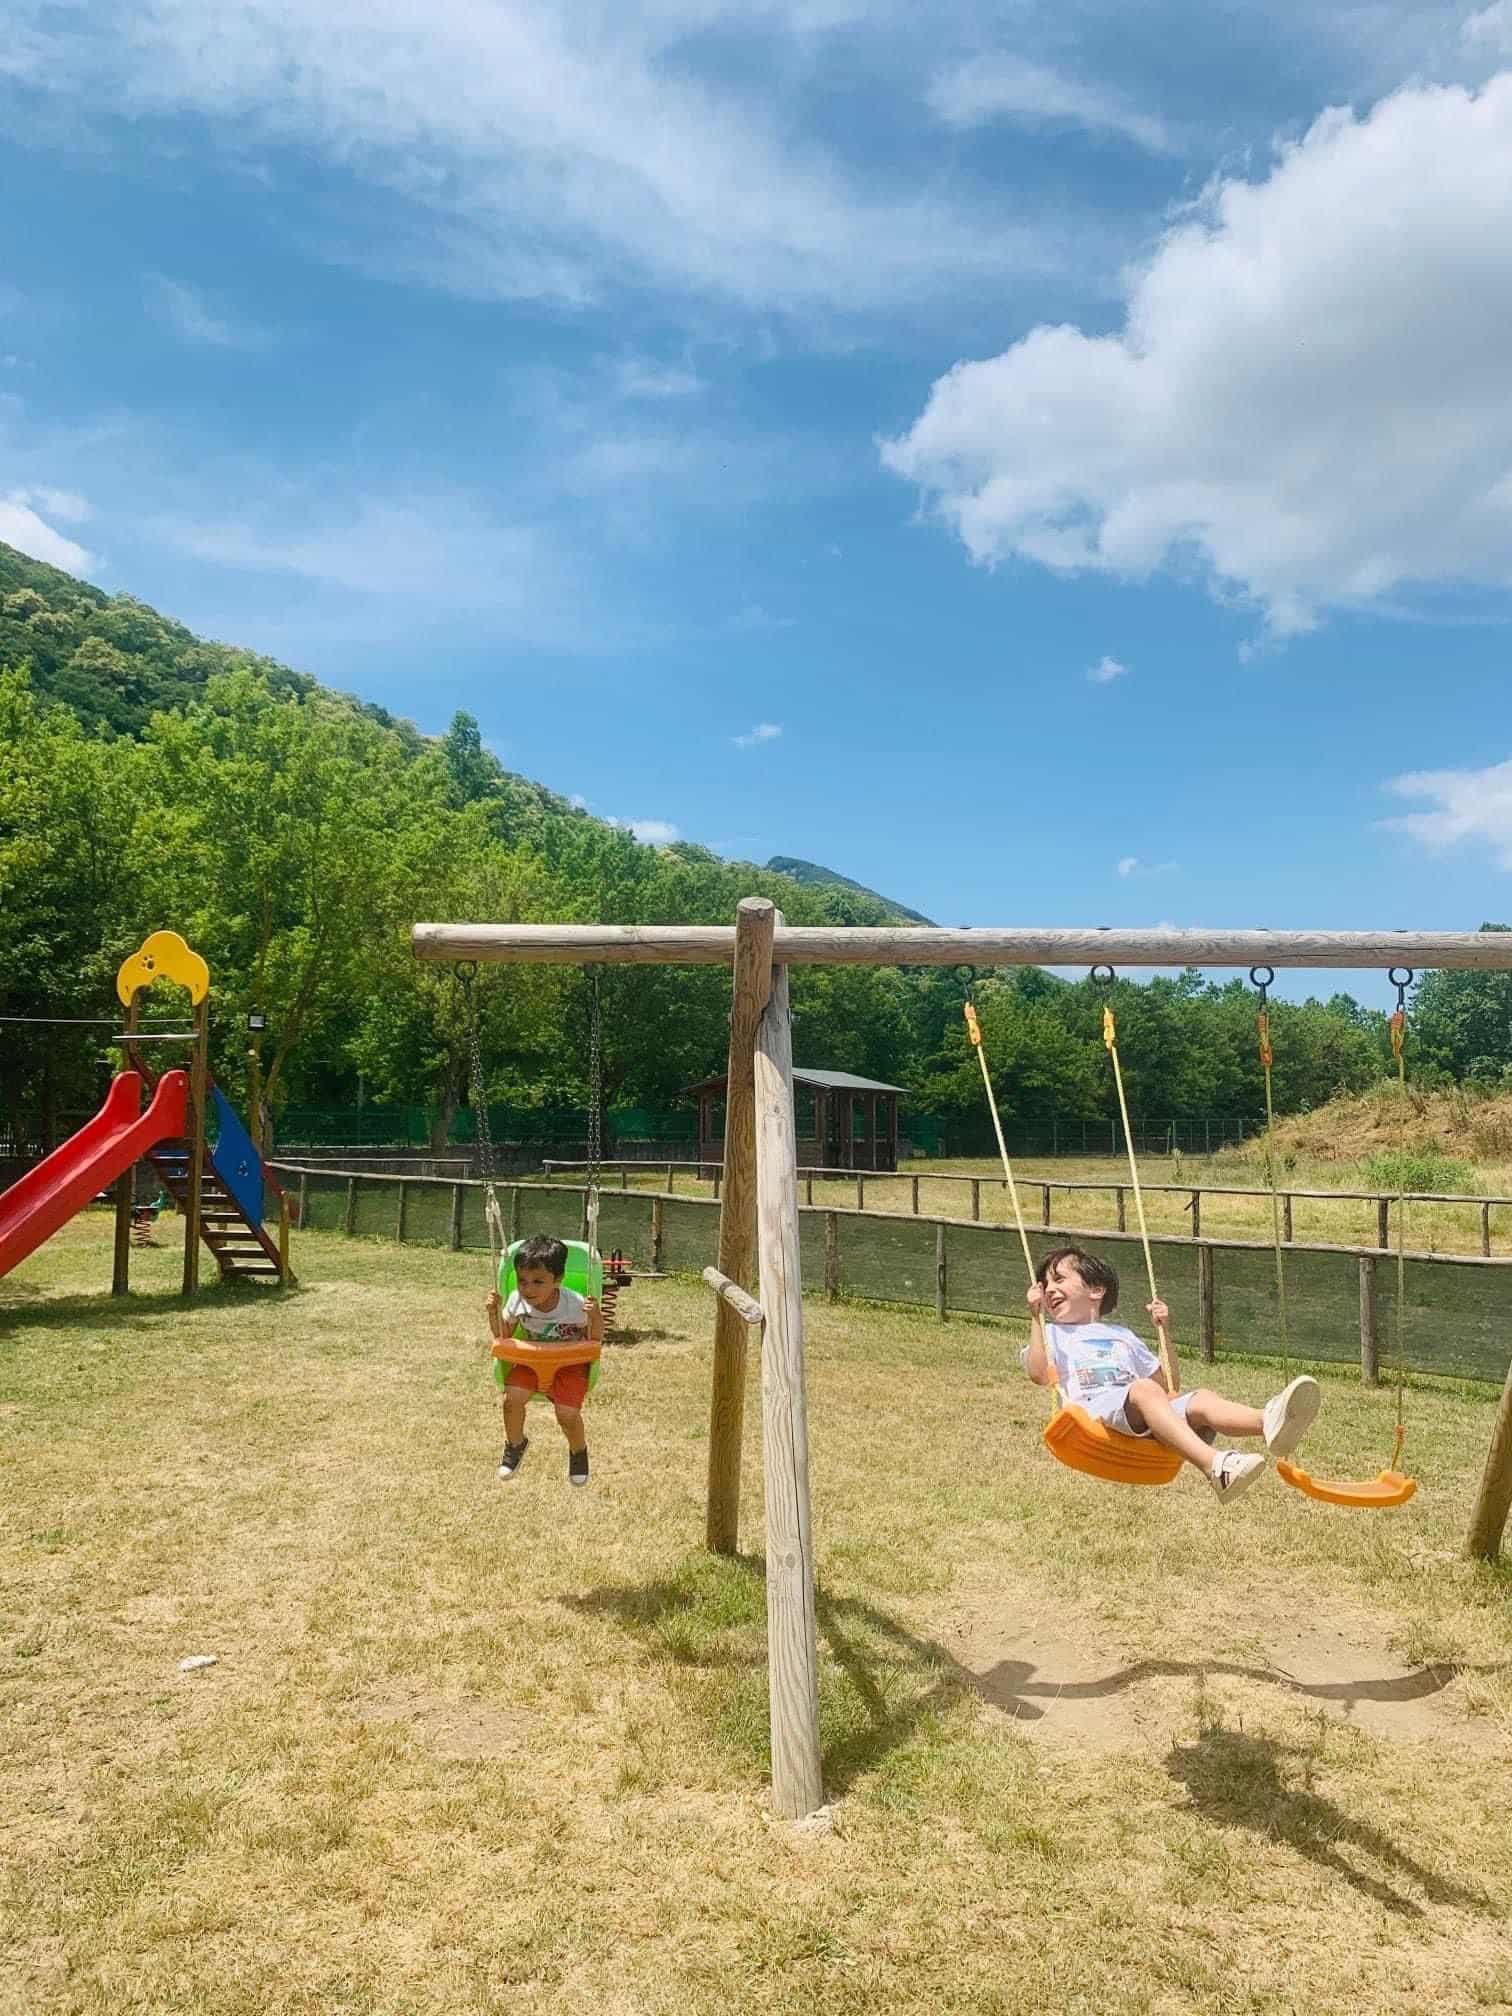 Parco Baby - area gioco per i più piccoli Parco Lacenolandia